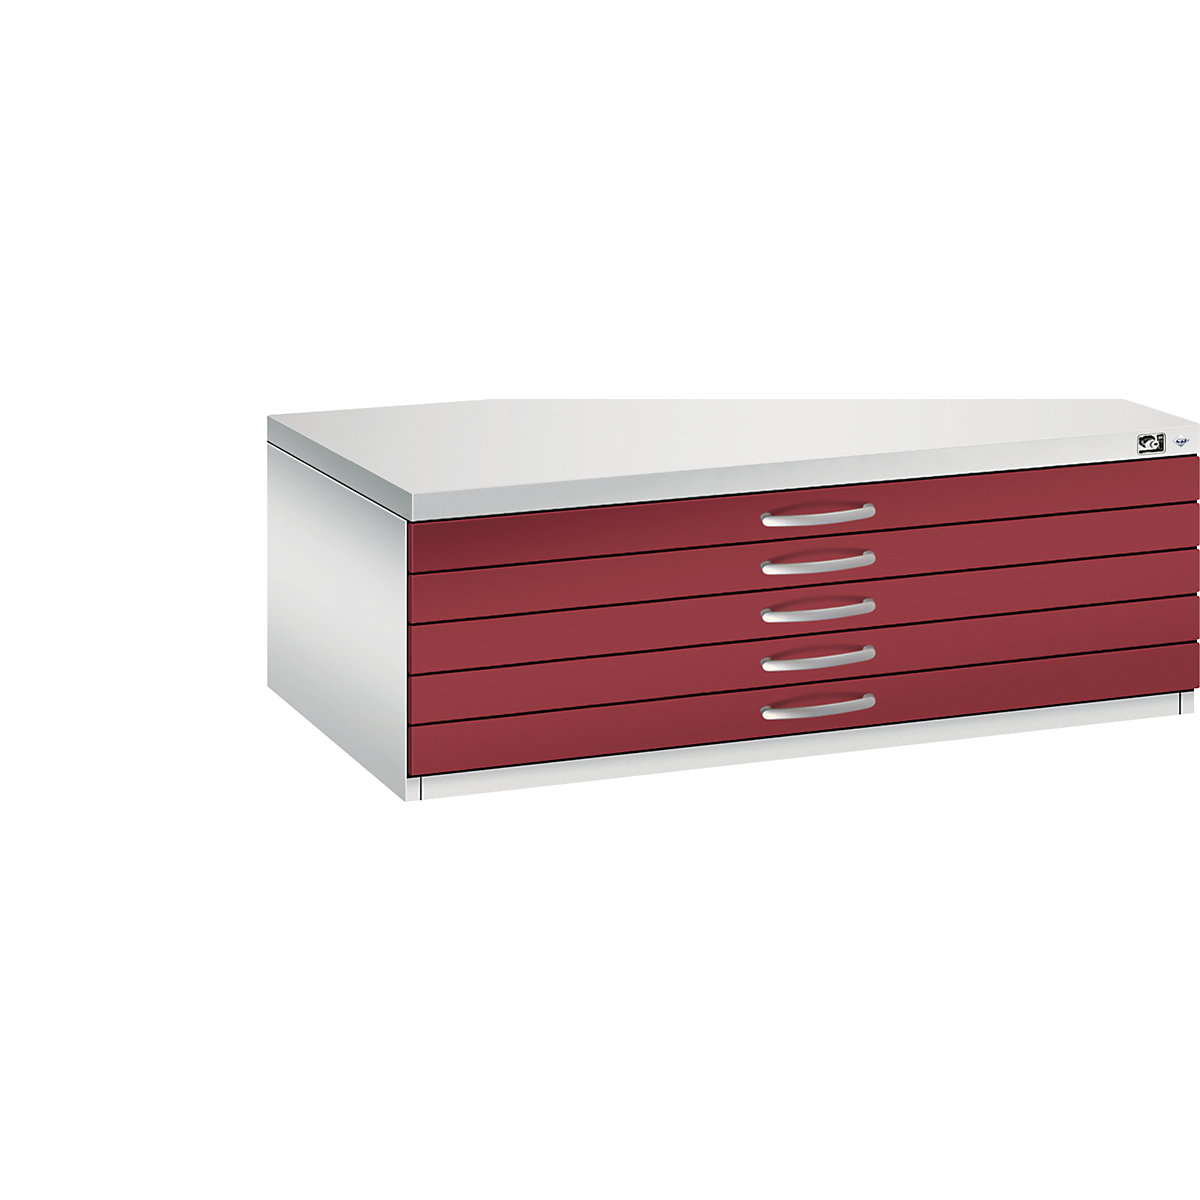 Dulap pentru planșe – C+P, DIN A1, 5 sertare, înălțime 420 mm, gri deschis / roșu rubin-15